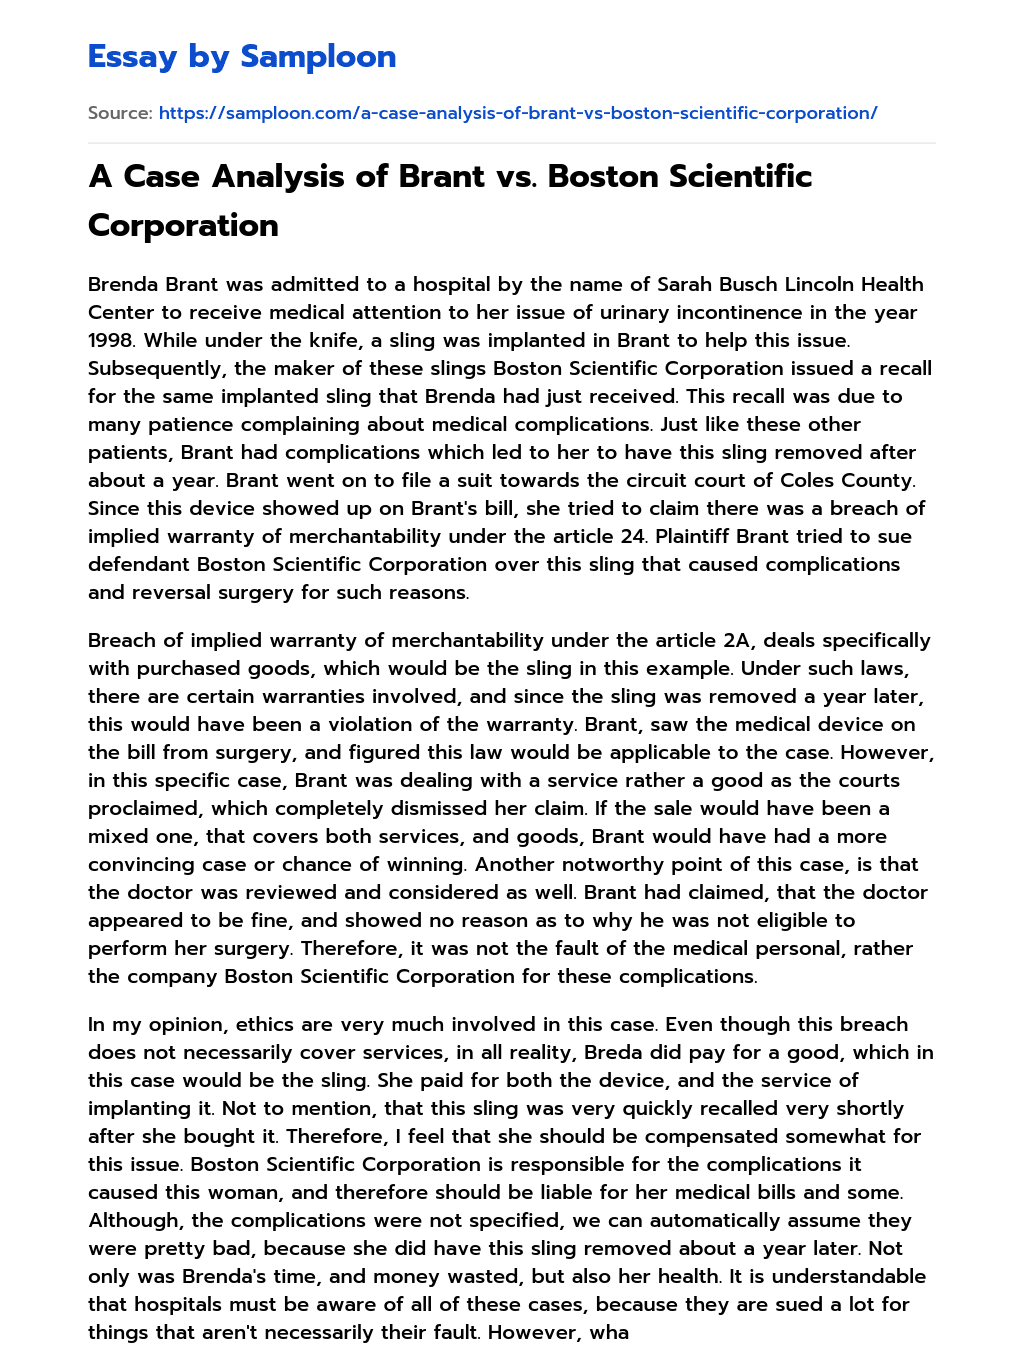 A Case Analysis of Brant vs. Boston Scientific Corporation essay